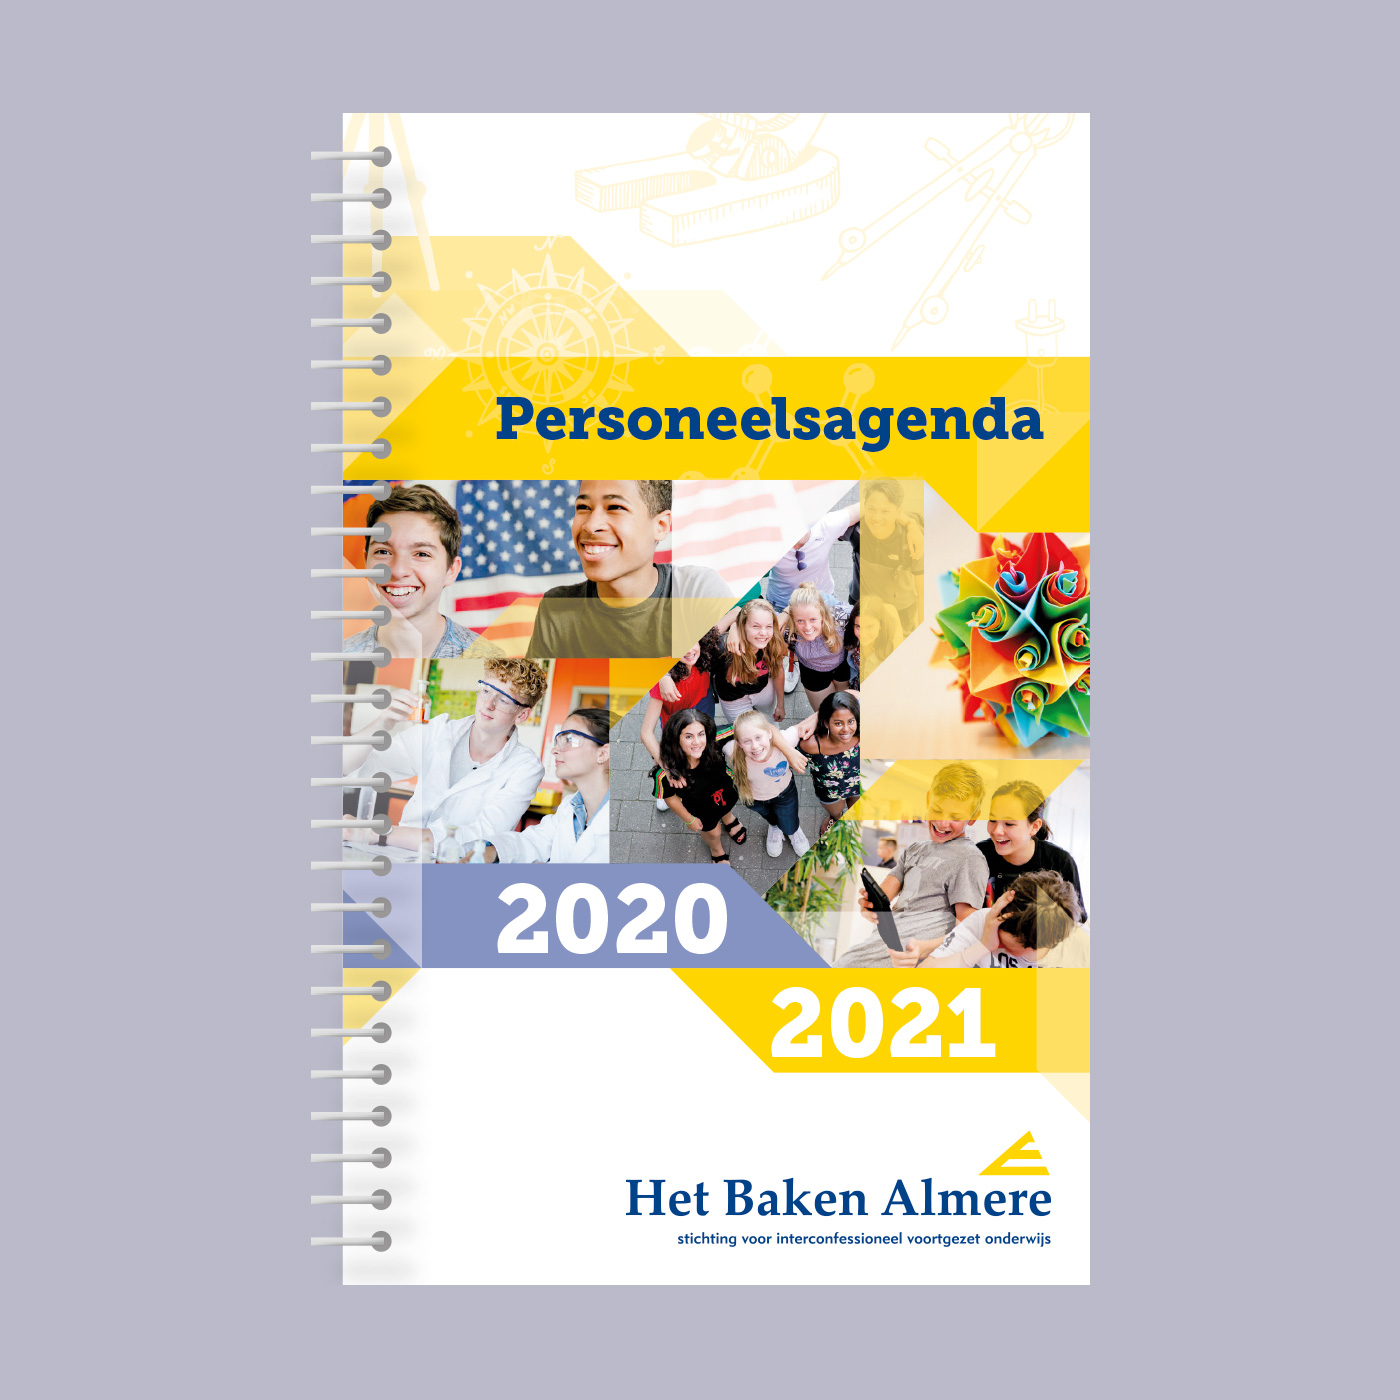 Ontwerp van het omslag voor de personeelsagenda 2020/2021 van Scholenstichting Het Baken Almere.